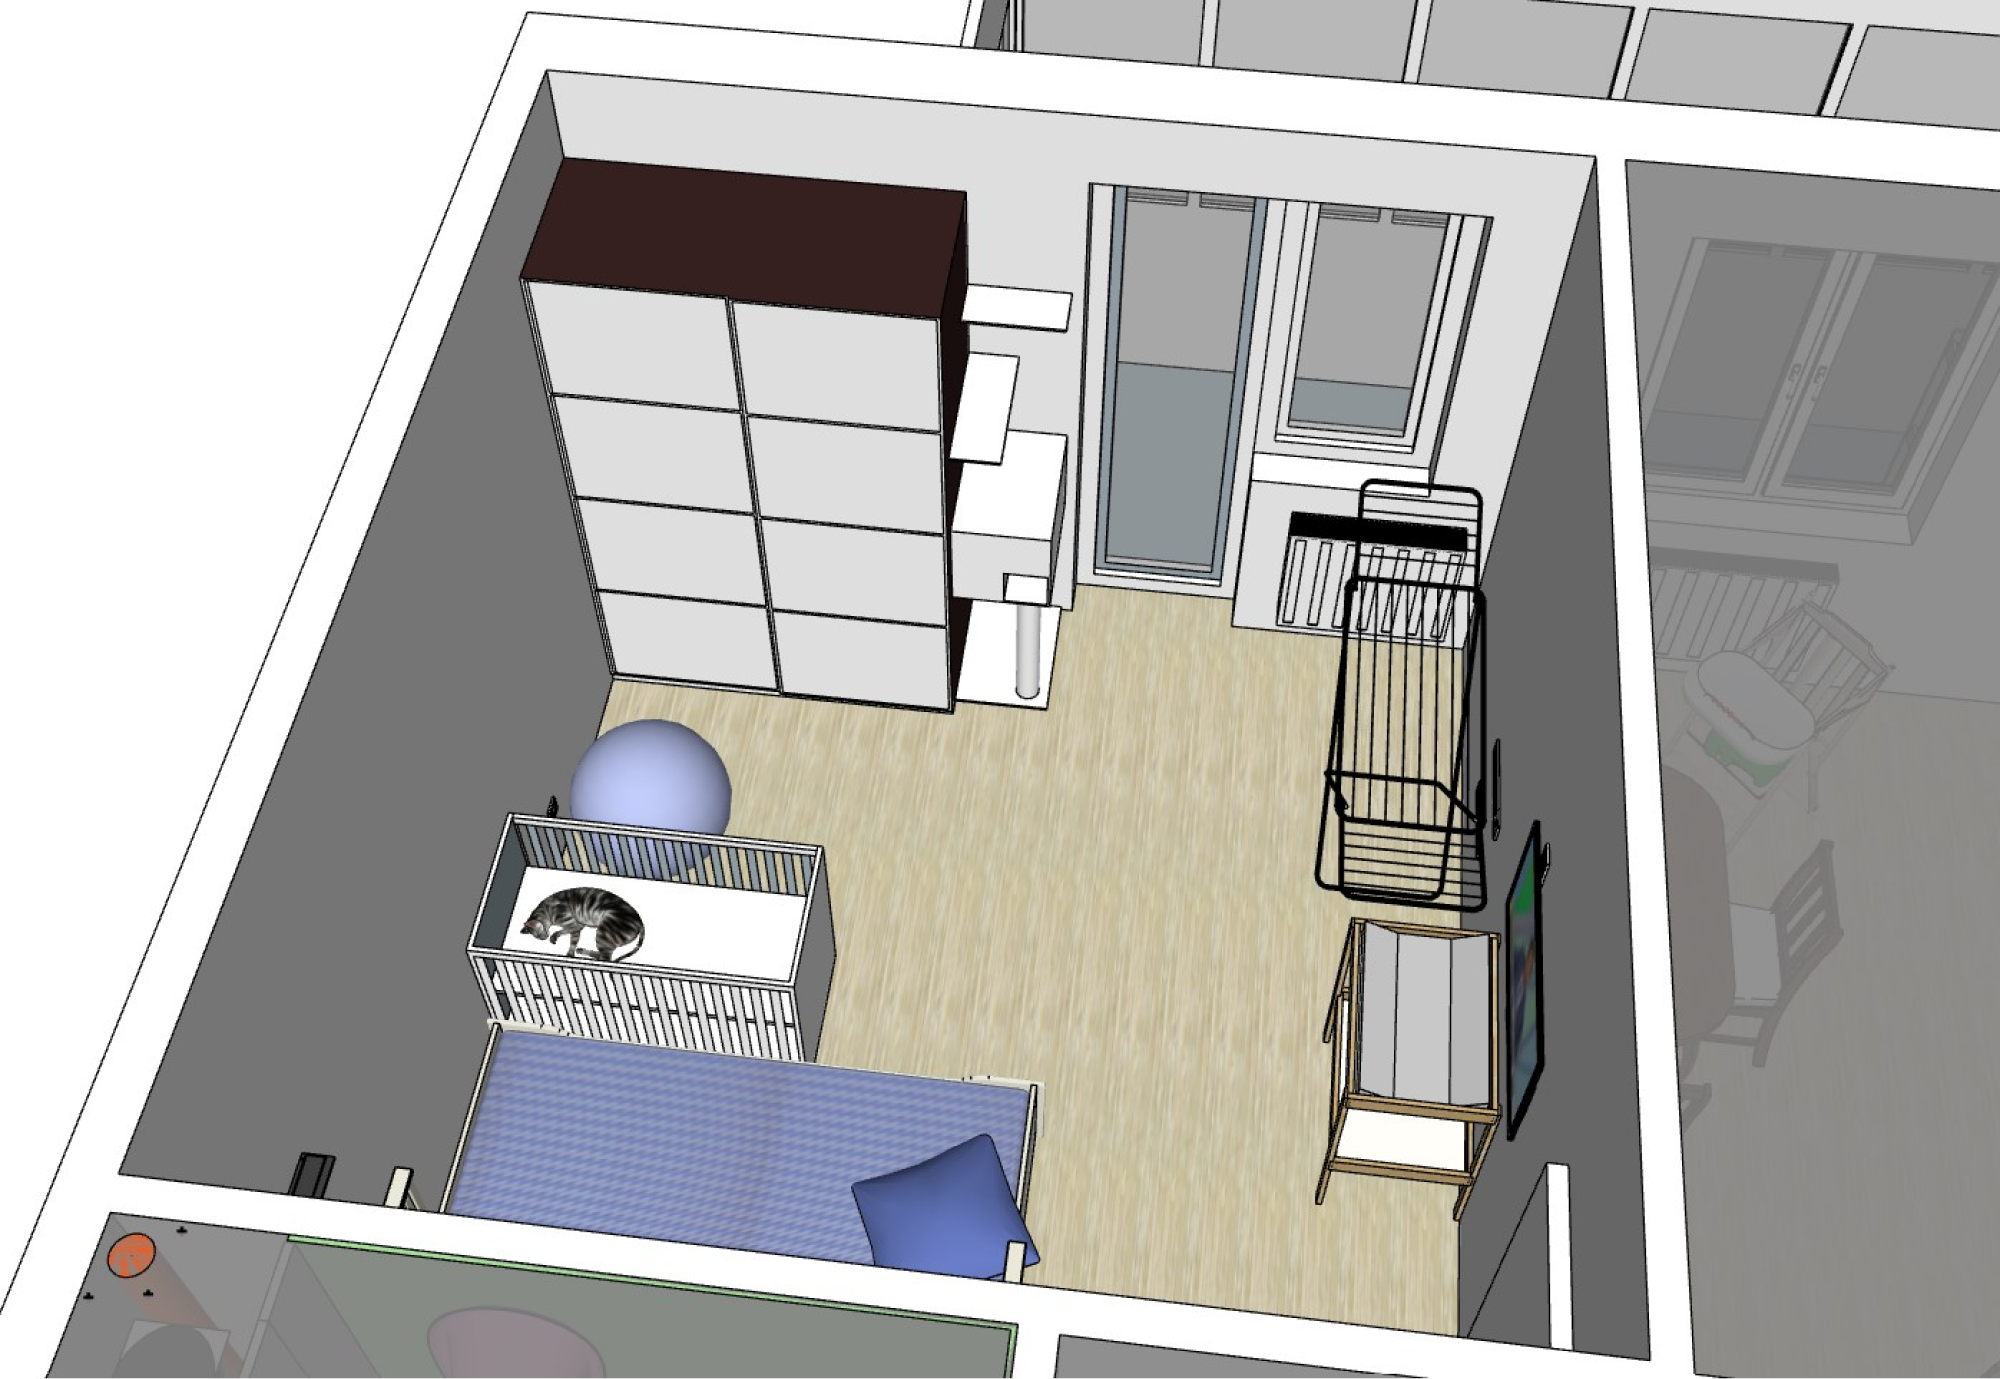 Мой муж нарисовал примерную схему нашей квартиры в программе «Скетчап». Вот как выглядит спальня в доме, где живет ребенок